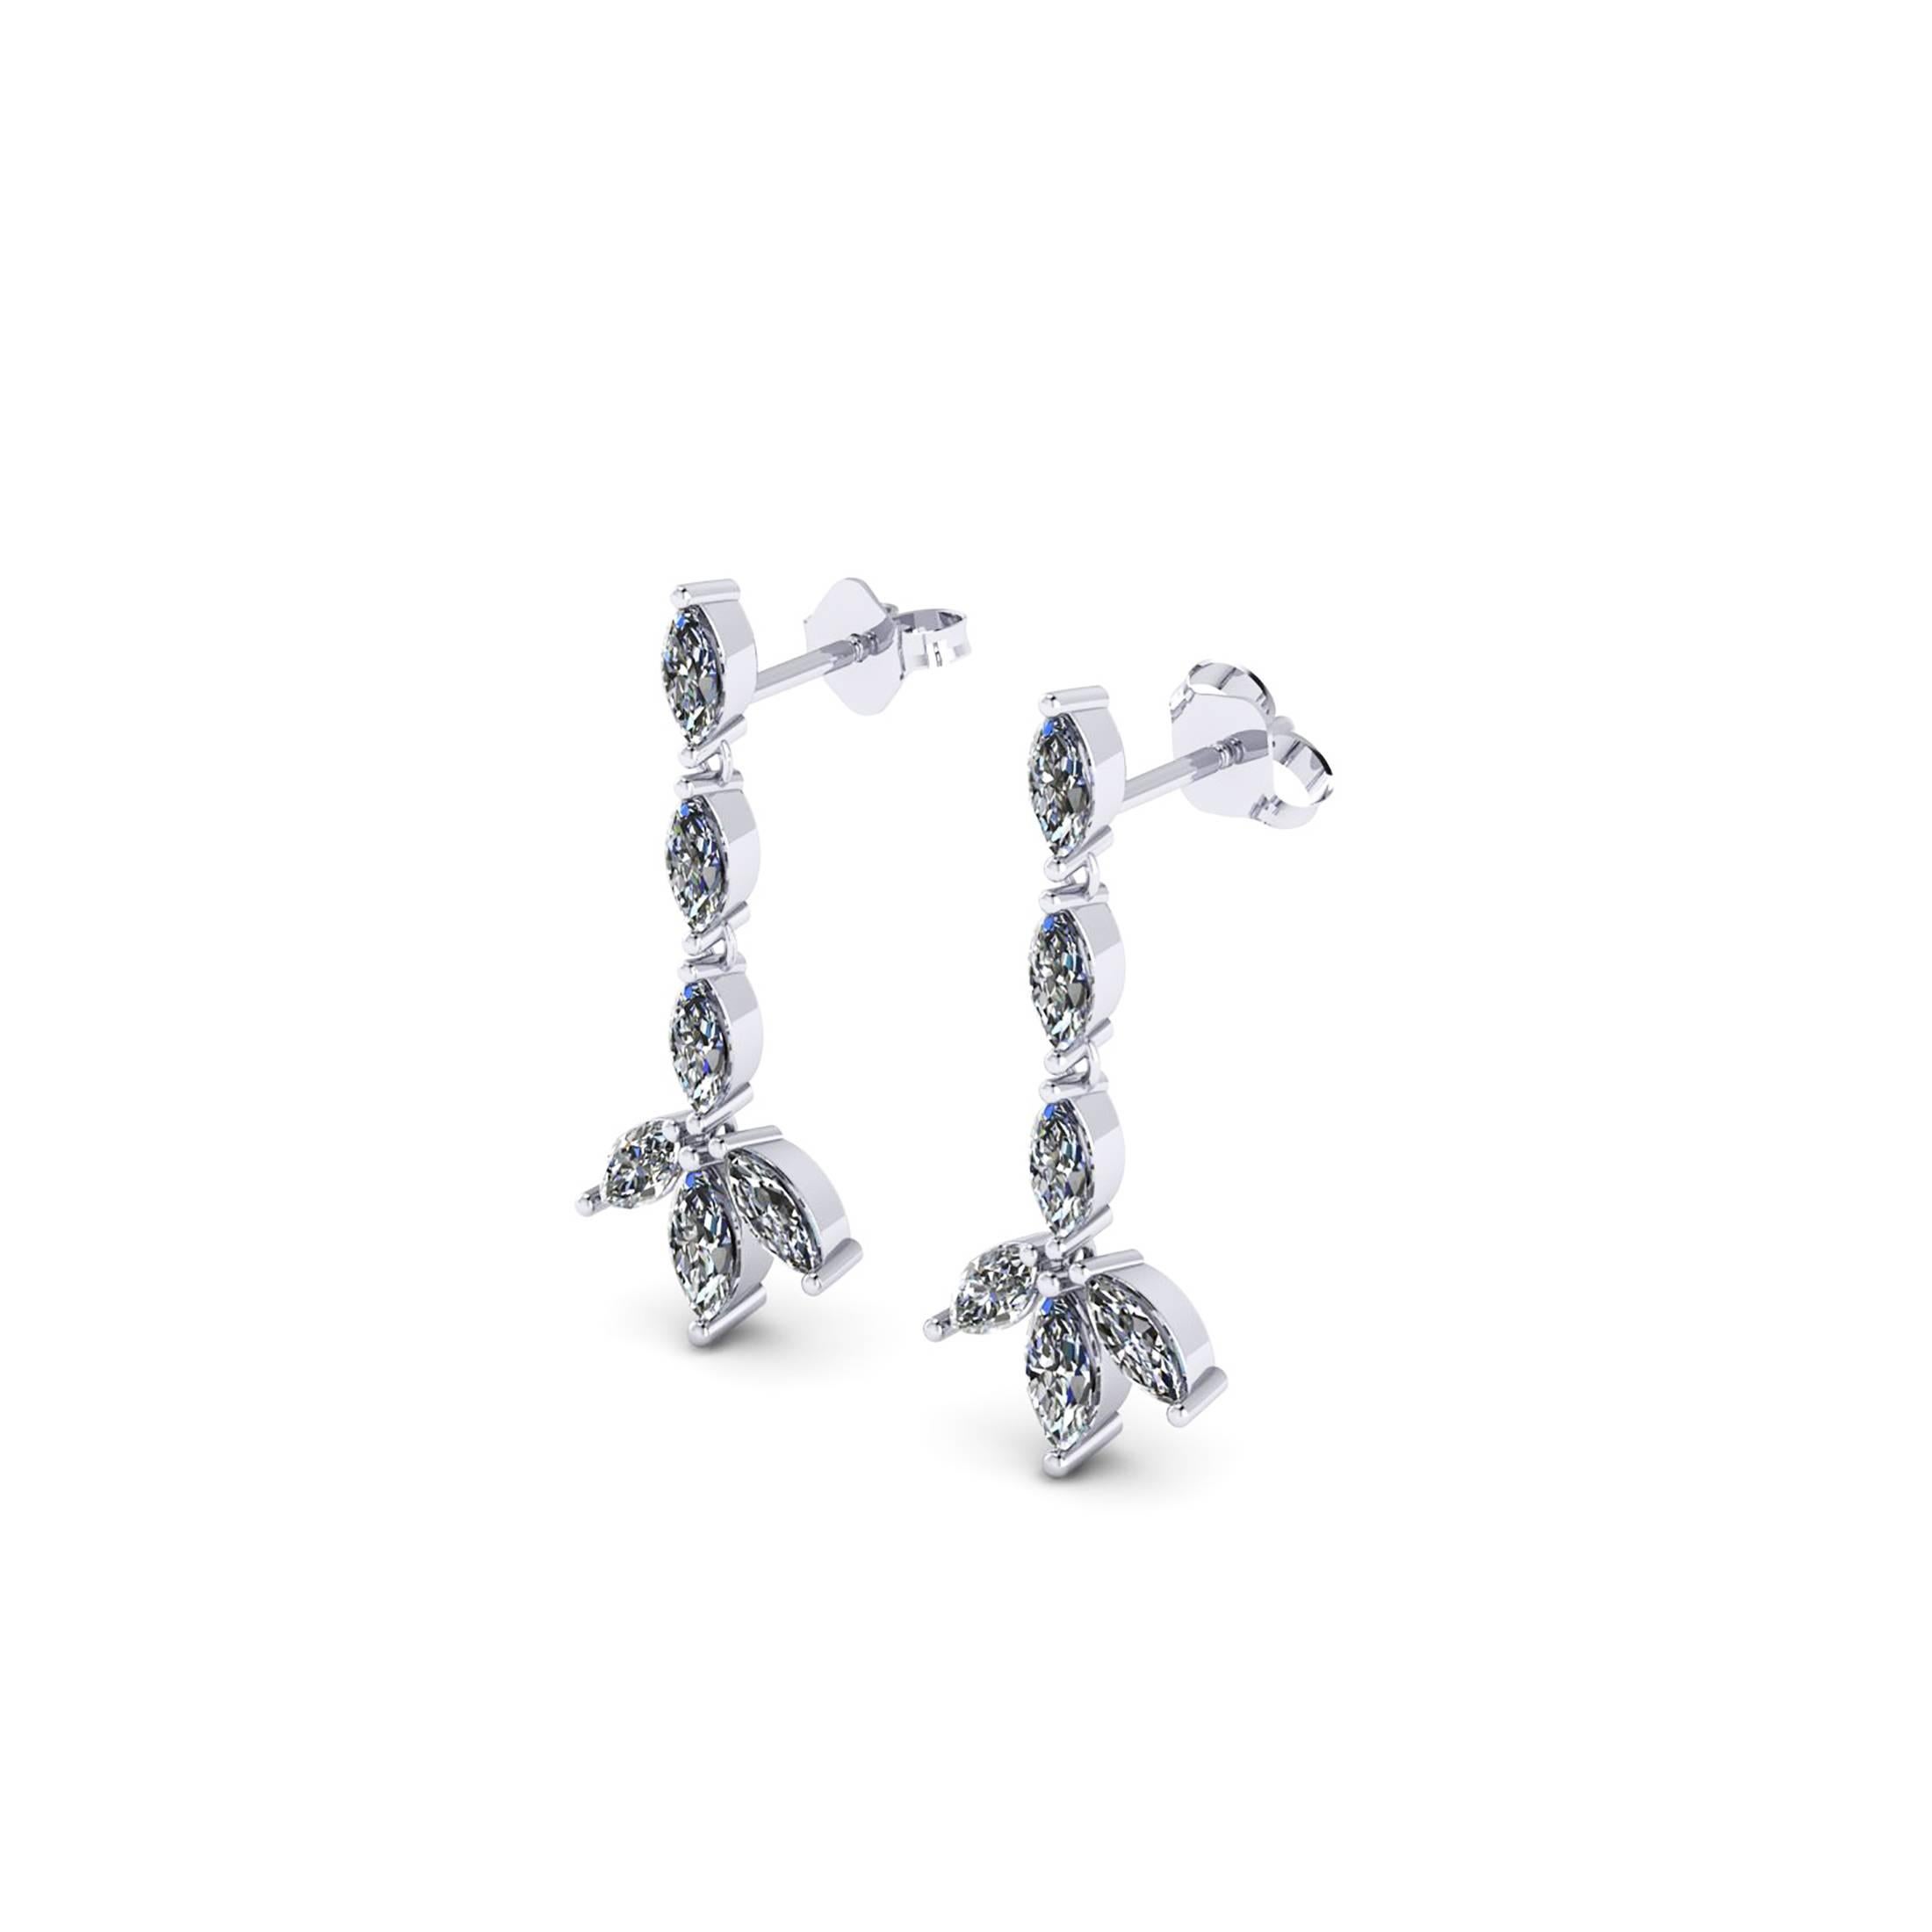 Ferrucci 1,24 Karat Marquise Diamanten baumelnden Ohrringe, handgefertigt in New York City von Meister Juwelier und Designer Francesco Ferrucci. Die Diamanten werden handverlesen und nach Reinheit und Farbe ausgewählt, um ein Maximum an strahlendem